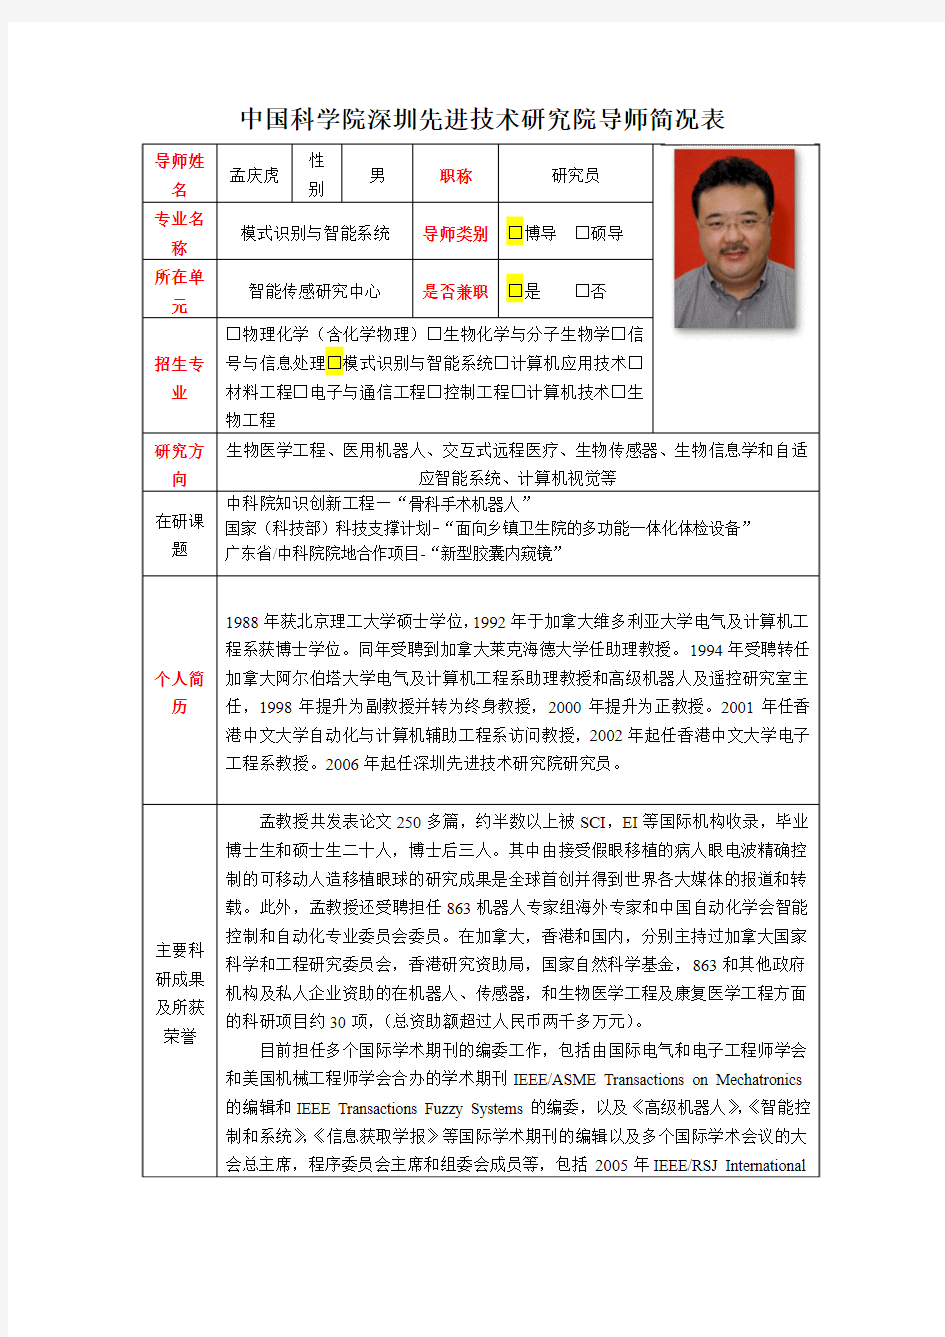 中国科学院深圳先进技术研究院导师简况表导师姓名孟庆虎性别男